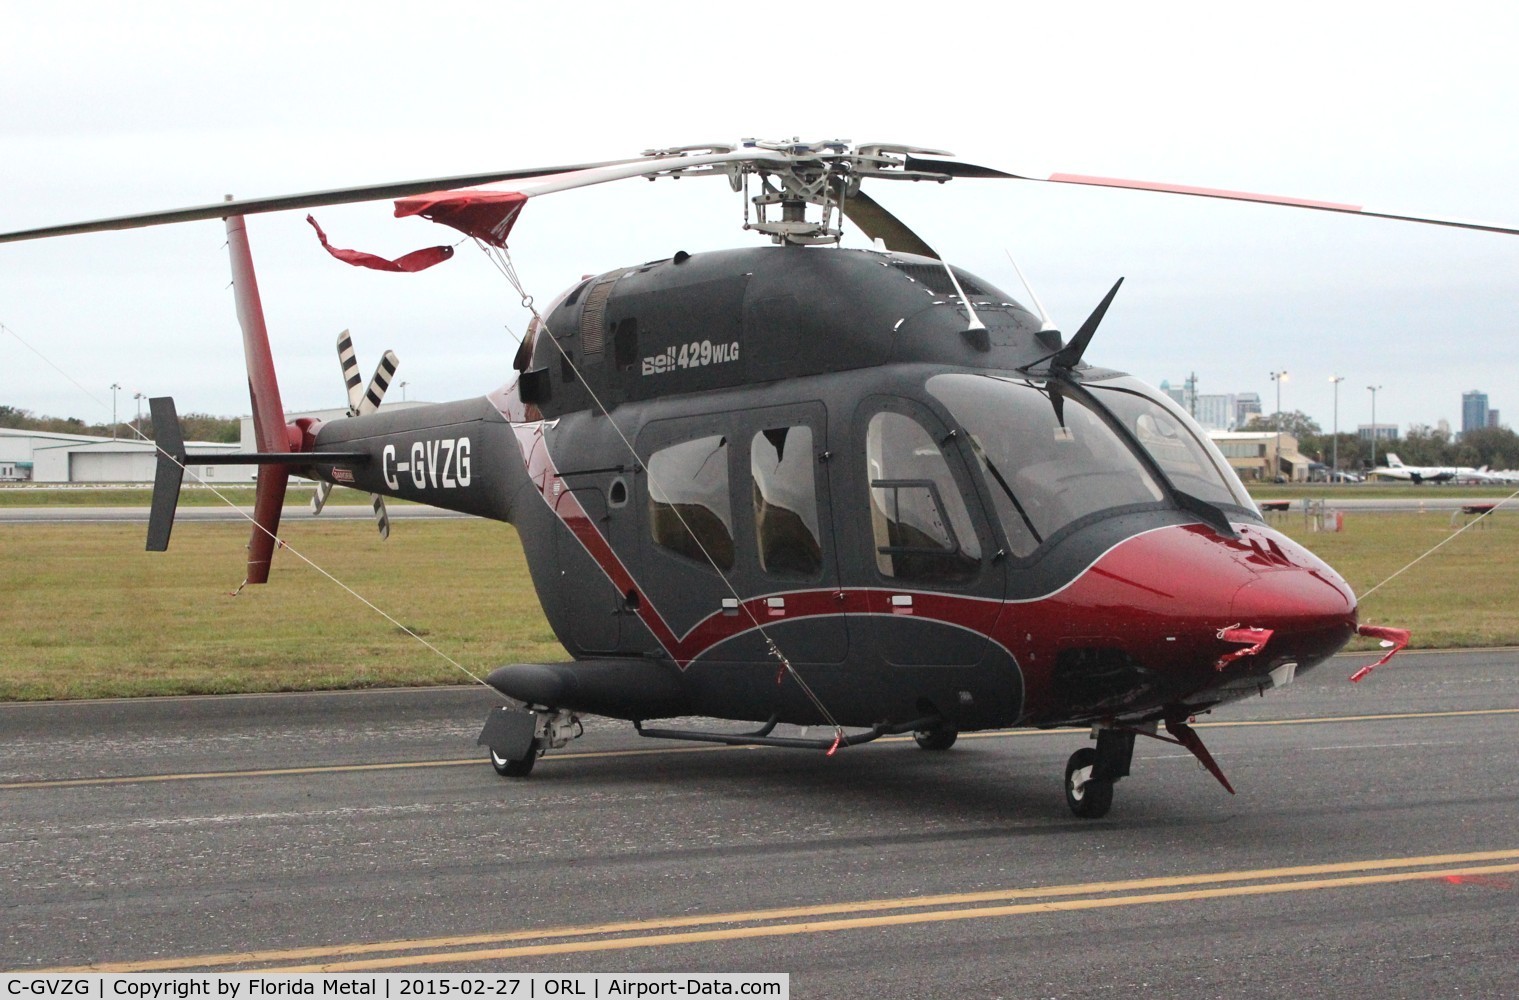 C-GVZG, 2013 Bell 429WLG GlobalRanger C/N 57150, Bell 429